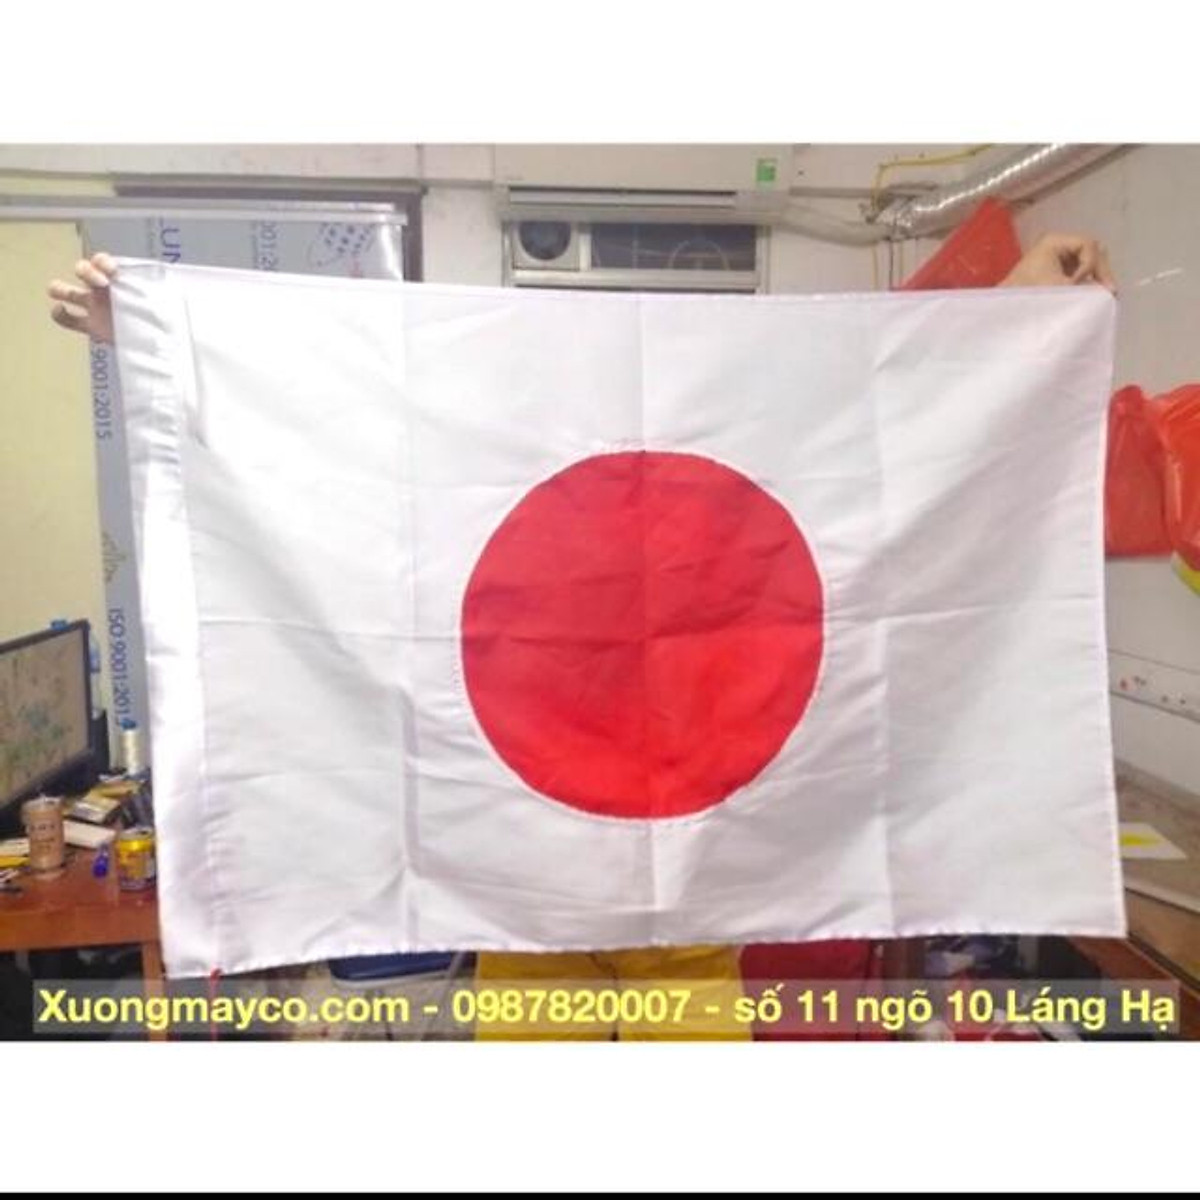 Mua cờ Nhật Bản: Cờ quốc kỳ của Nhật Bản không chỉ có giá trị về mặt tinh thần mà còn là một sản phẩm trang trí tuyệt vời. Với màu sắc tươi sáng và hình ảnh đẹp mắt, cờ Nhật Bản đã trở thành món đồ trang trí không thể thiếu trong những căn nhà hiện đại. Hãy cùng xem danh sách các cửa hàng bán cờ Nhật Bản để tìm cho mình một chiếc cờ ưng ý nhất.